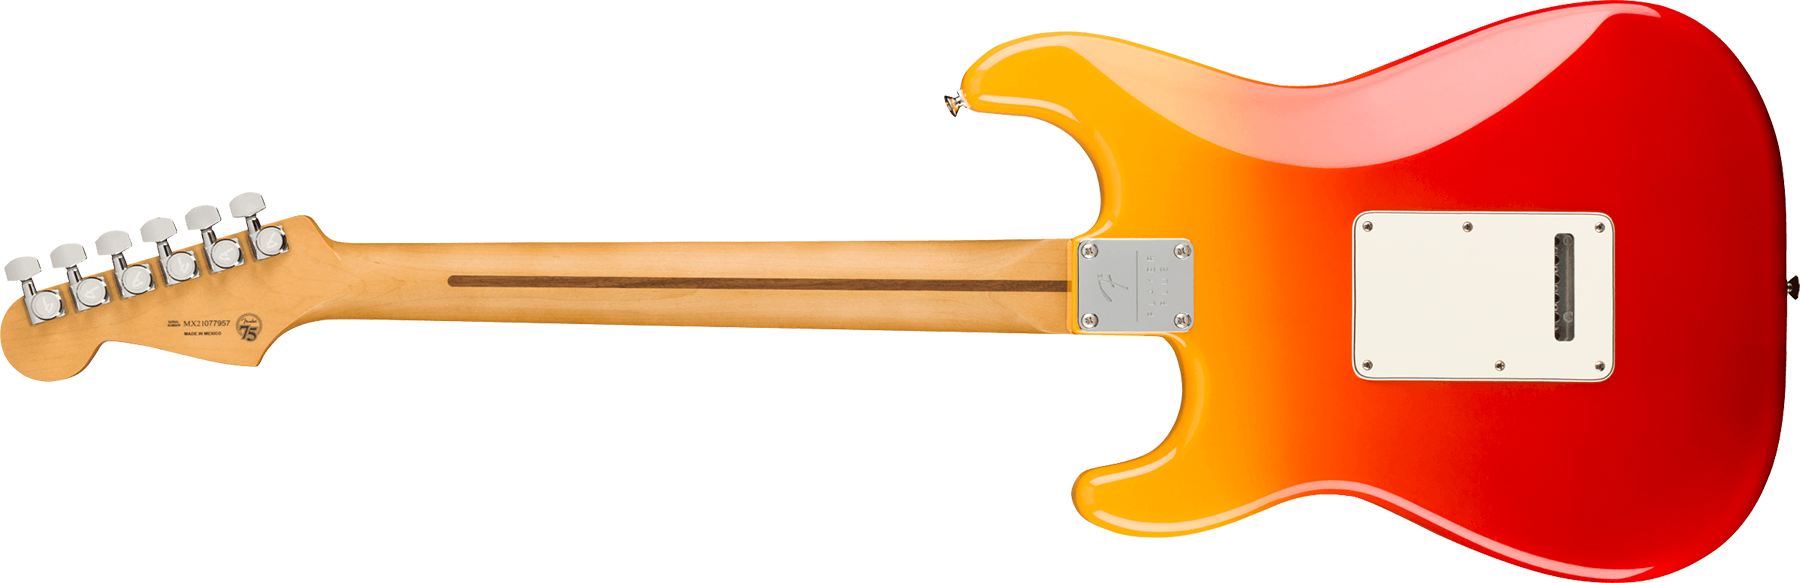 Fender Strat Player Plus Mex 3s Trem Mn - Tequila Sunrise - Elektrische gitaar in Str-vorm - Variation 1